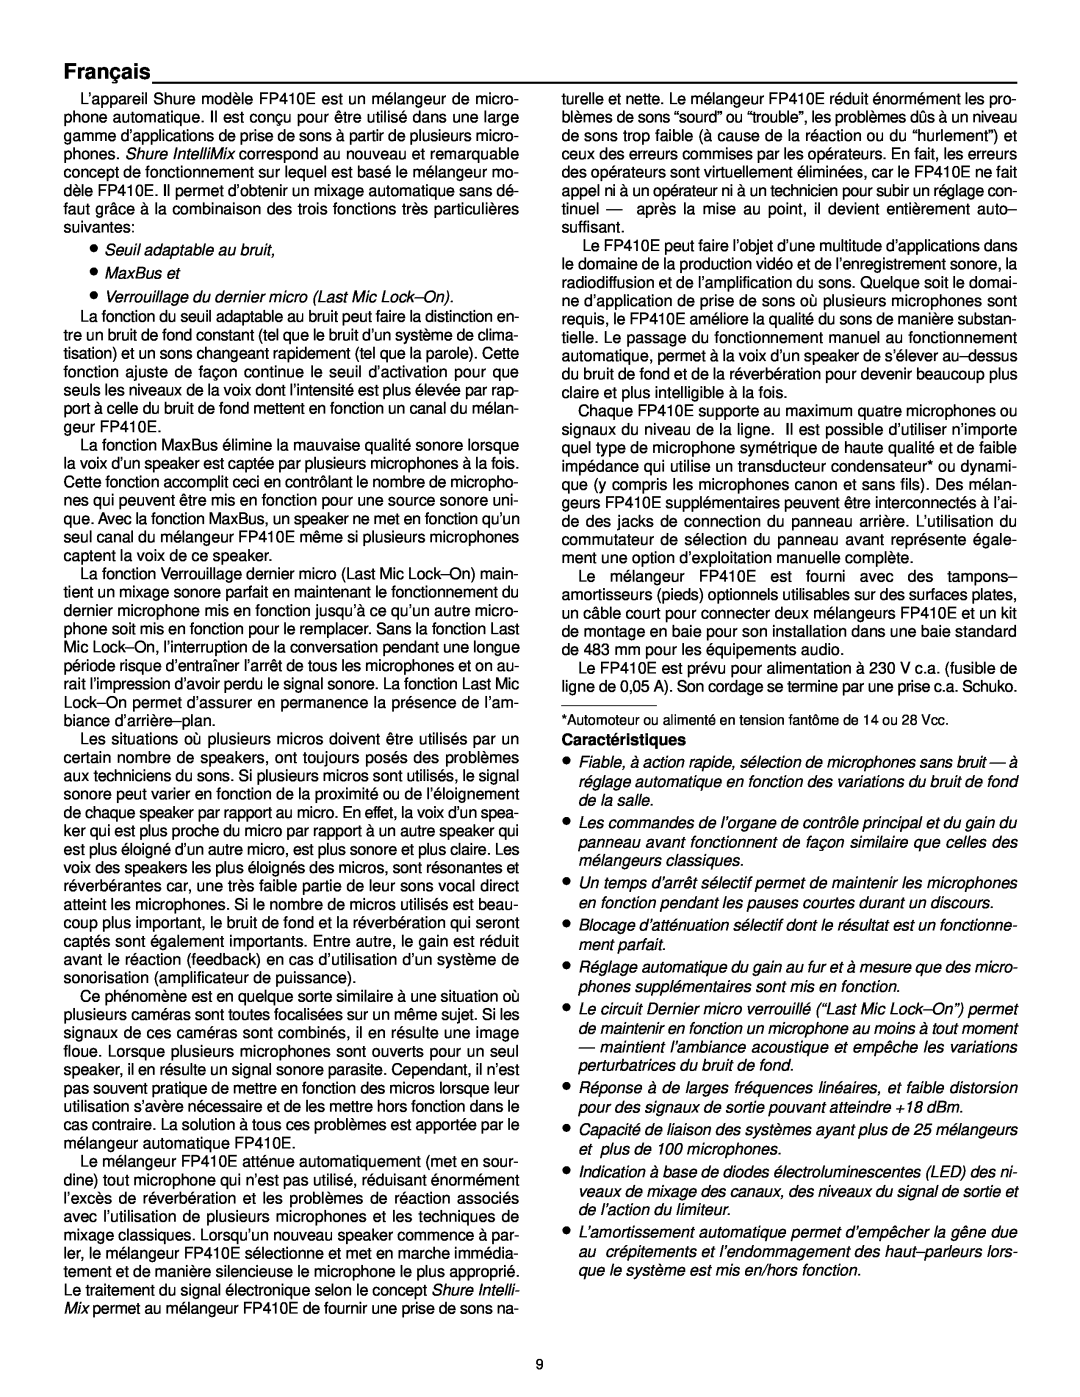 Shure FP410 manual Français, Caractéristiques 